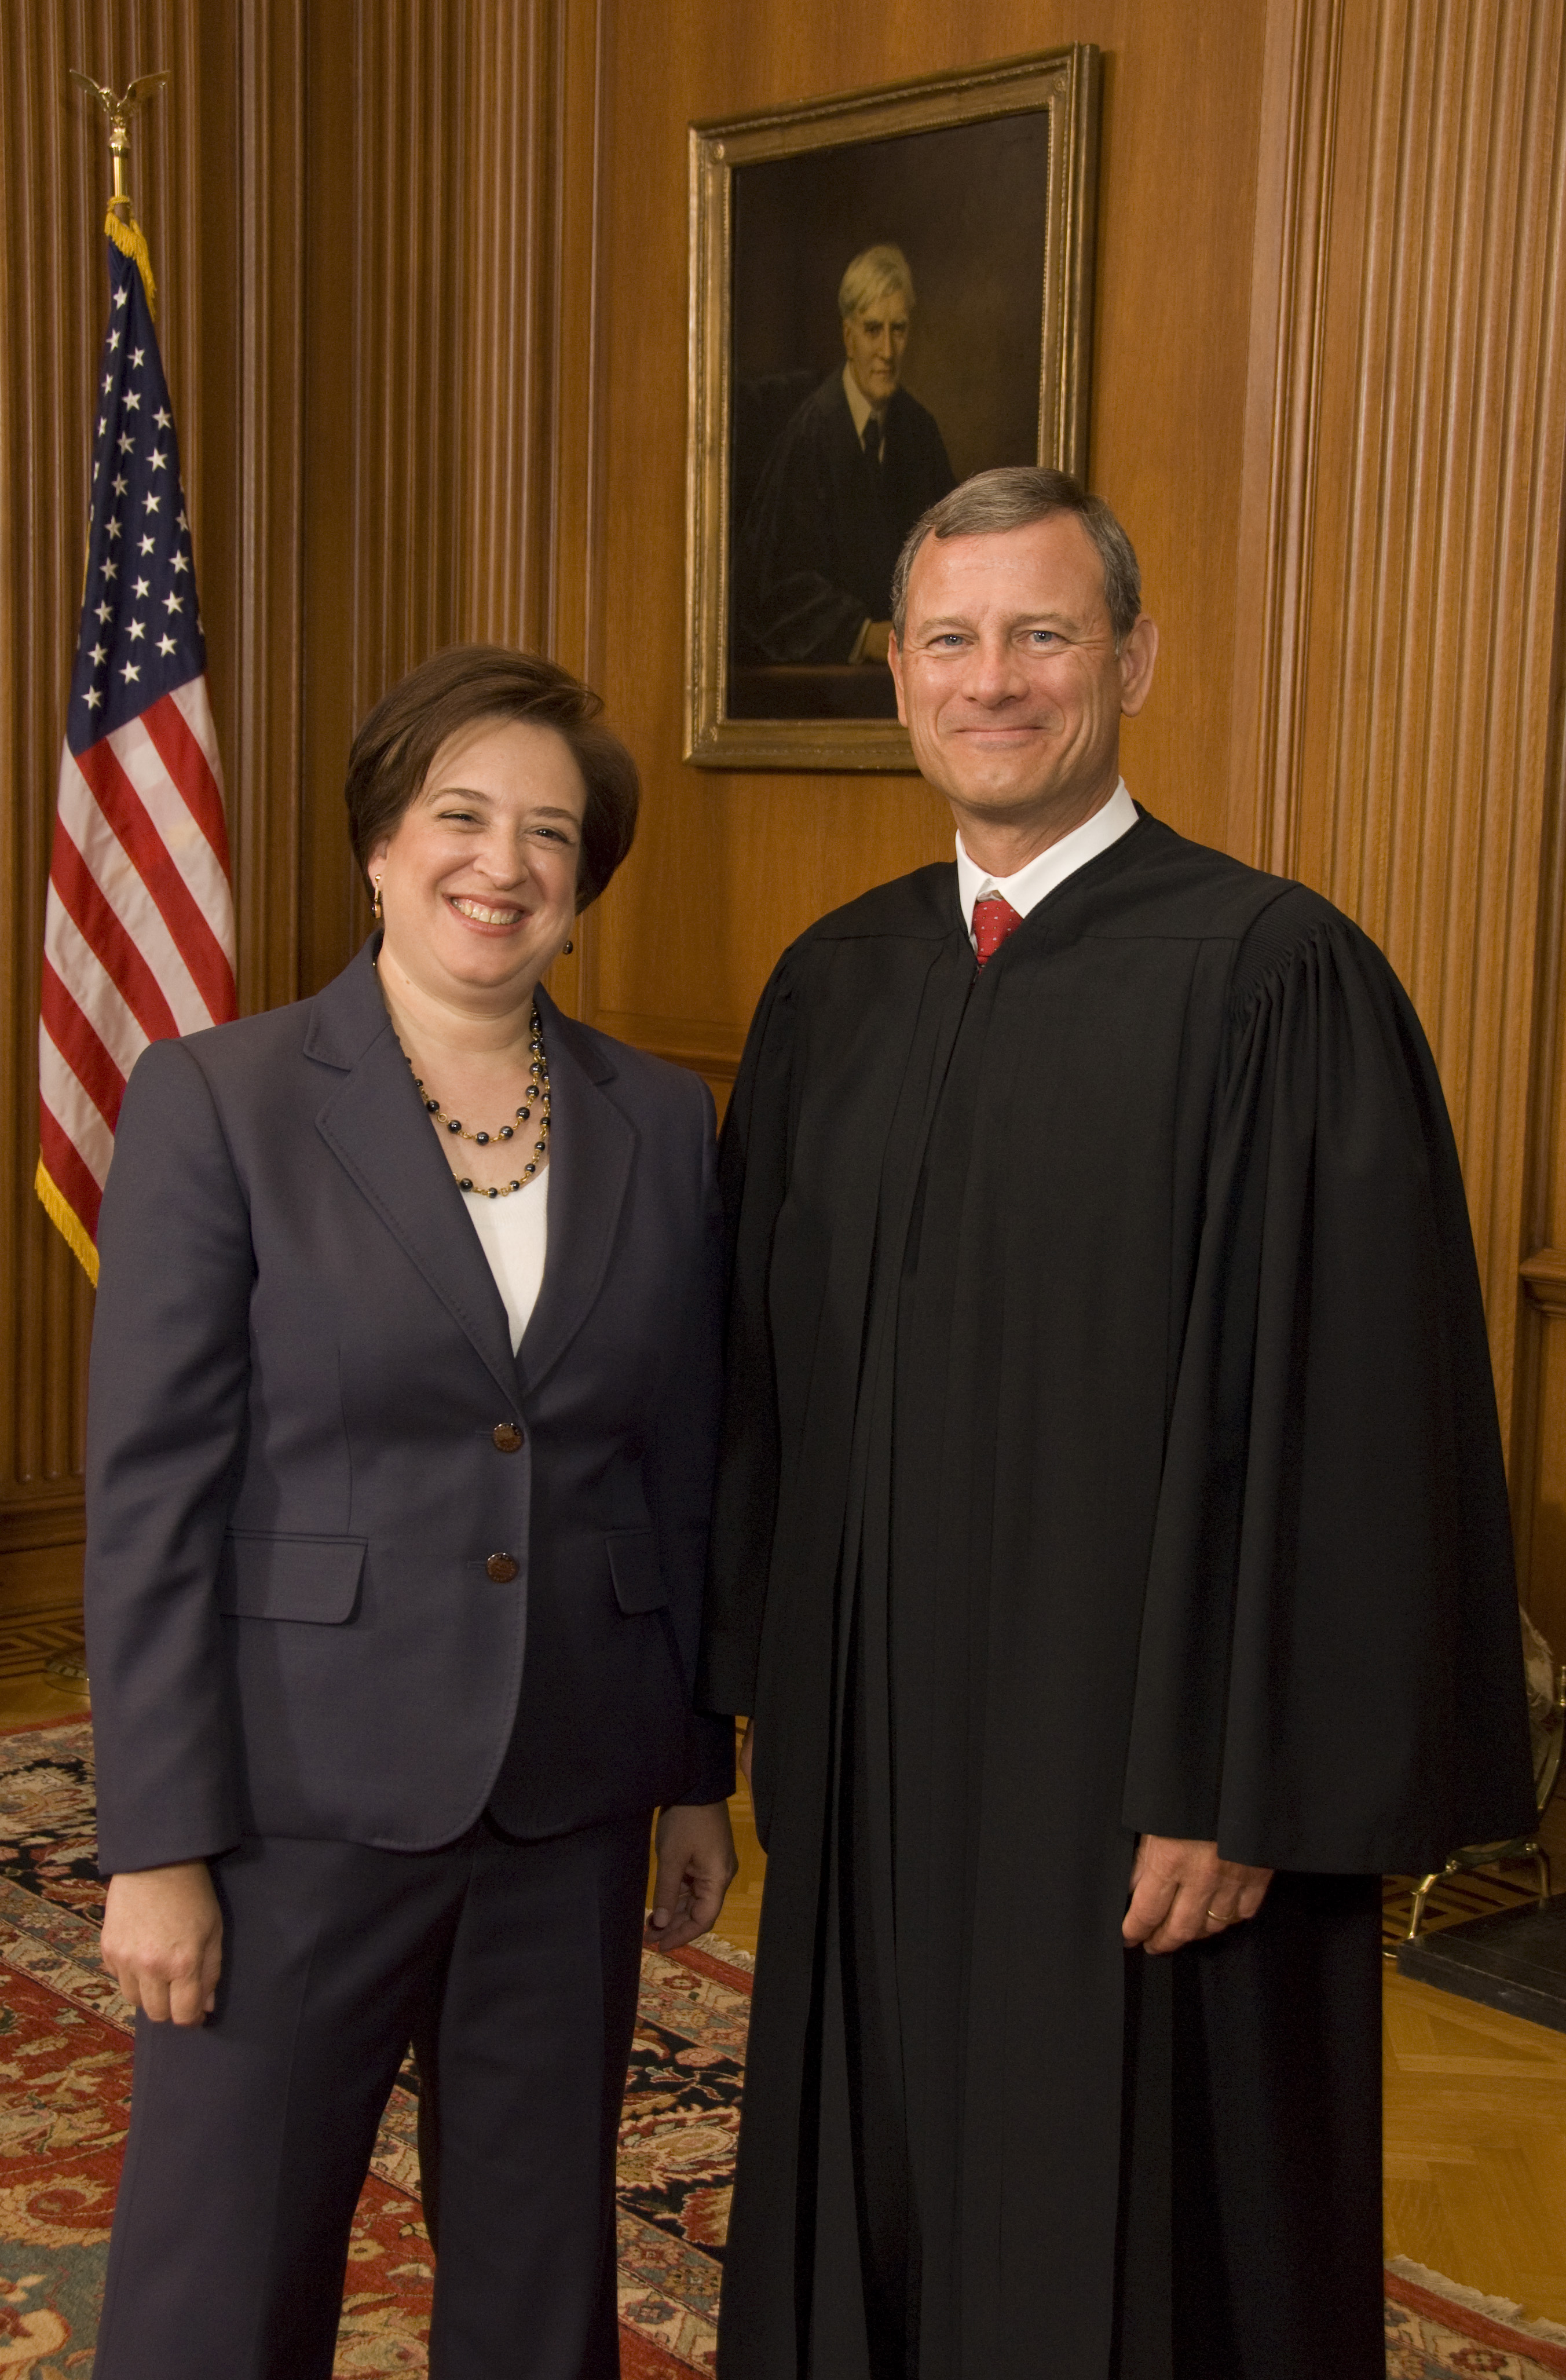 Justice Elena Kagan and Chief Justice John G. Roberts, Jr.